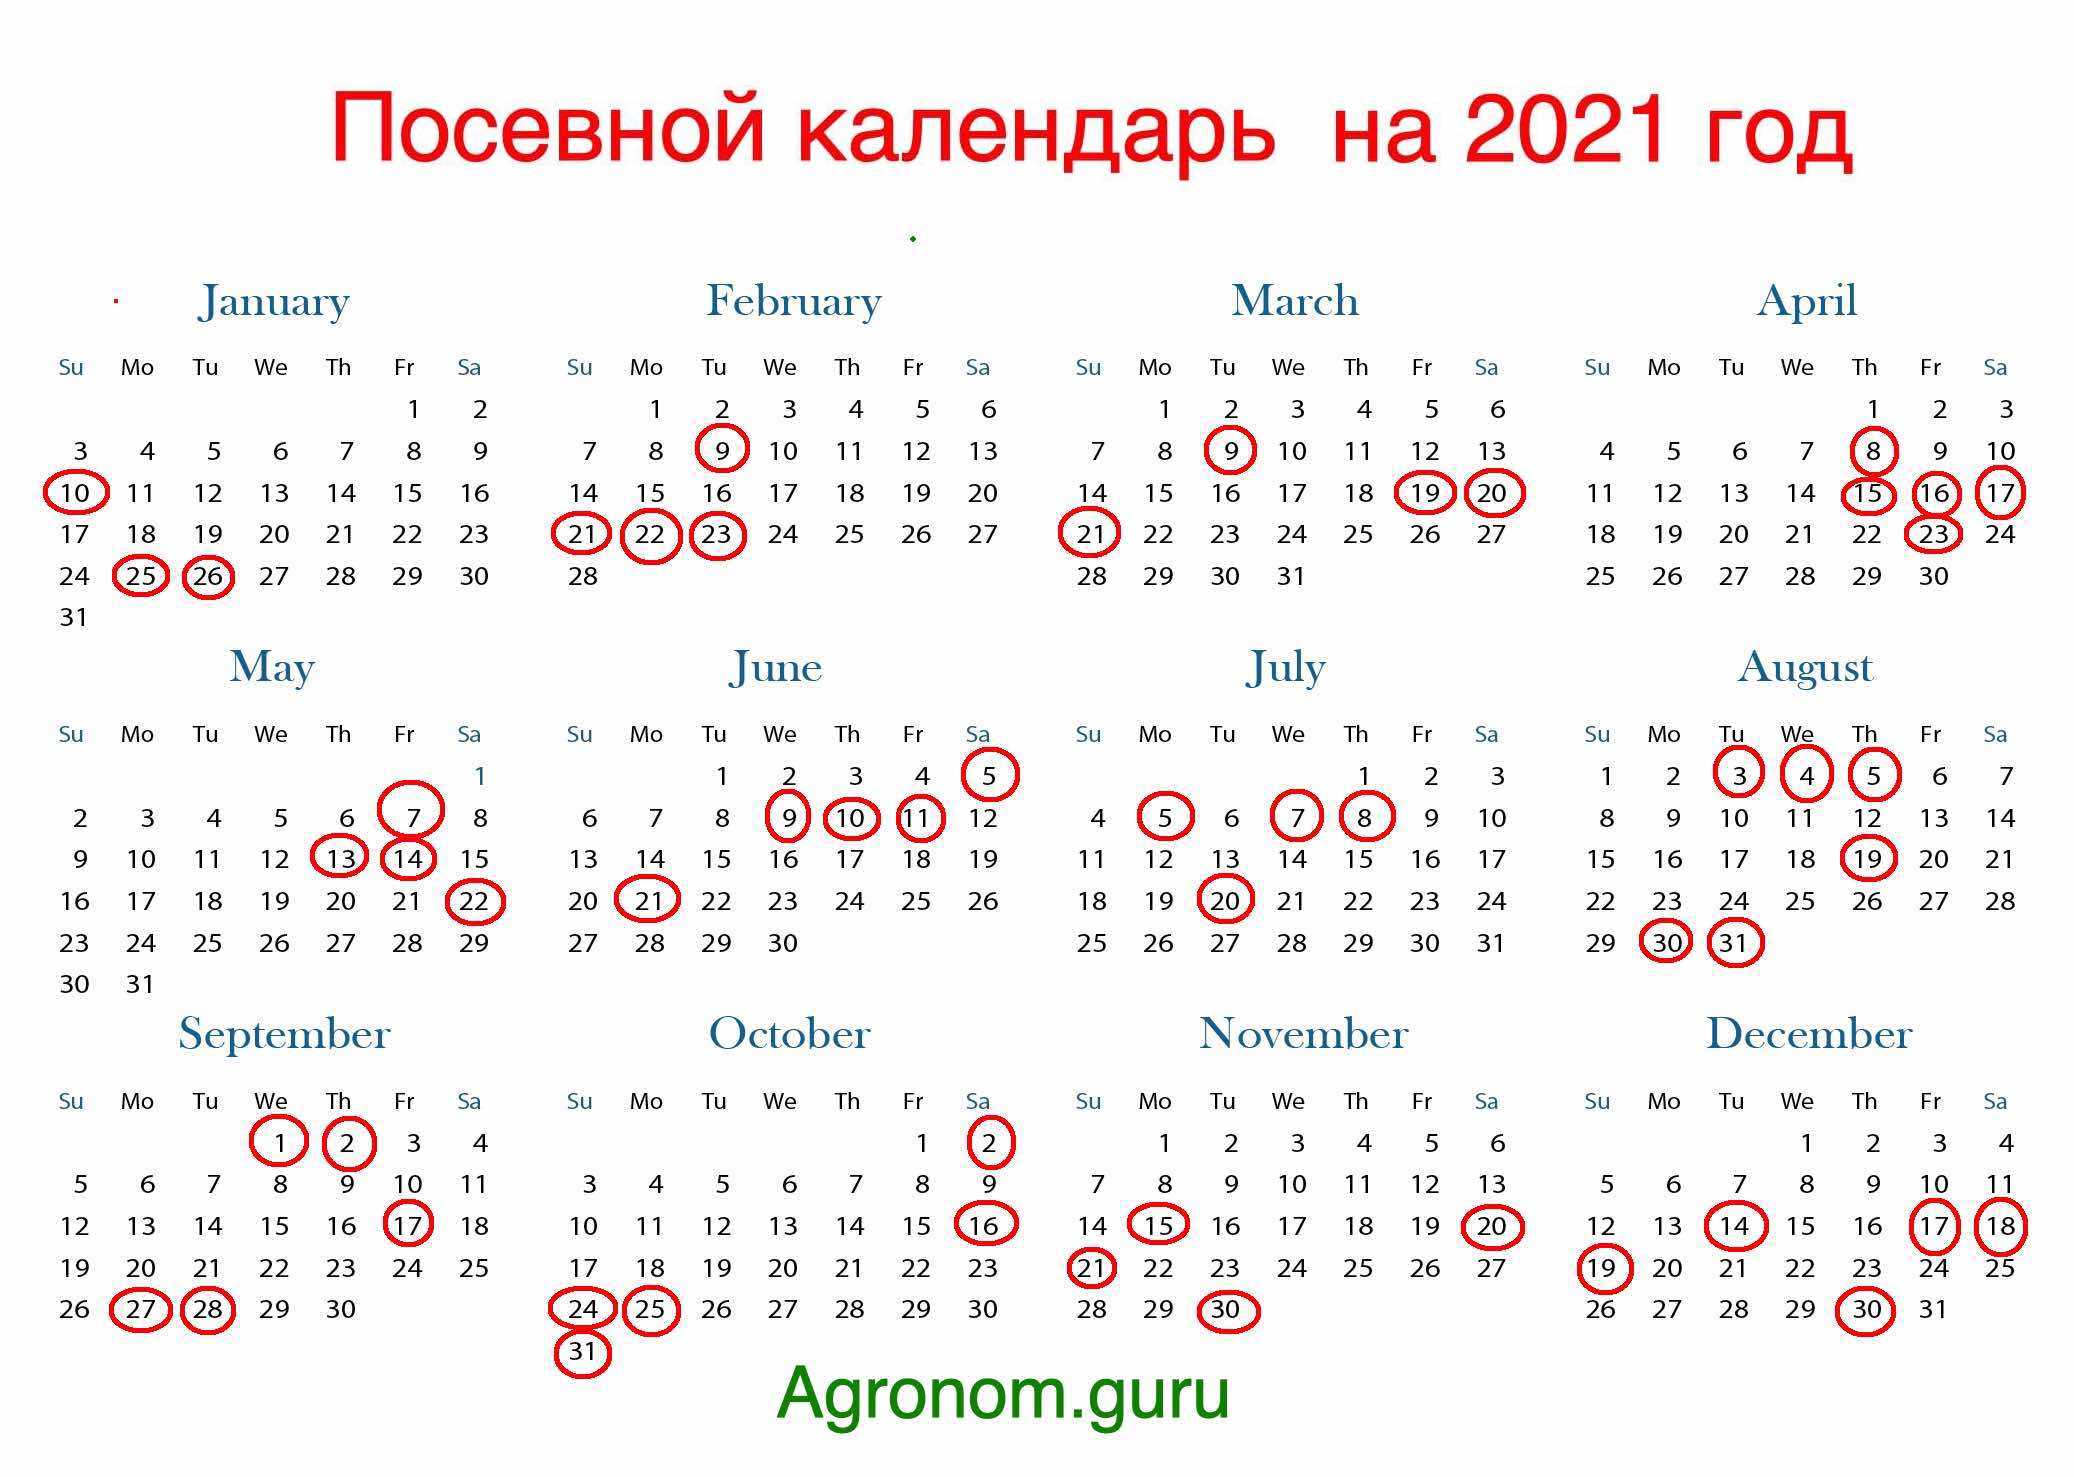 Когда следует сеять петунию на рассаду в 2021 году. рекомендации лунного календаря